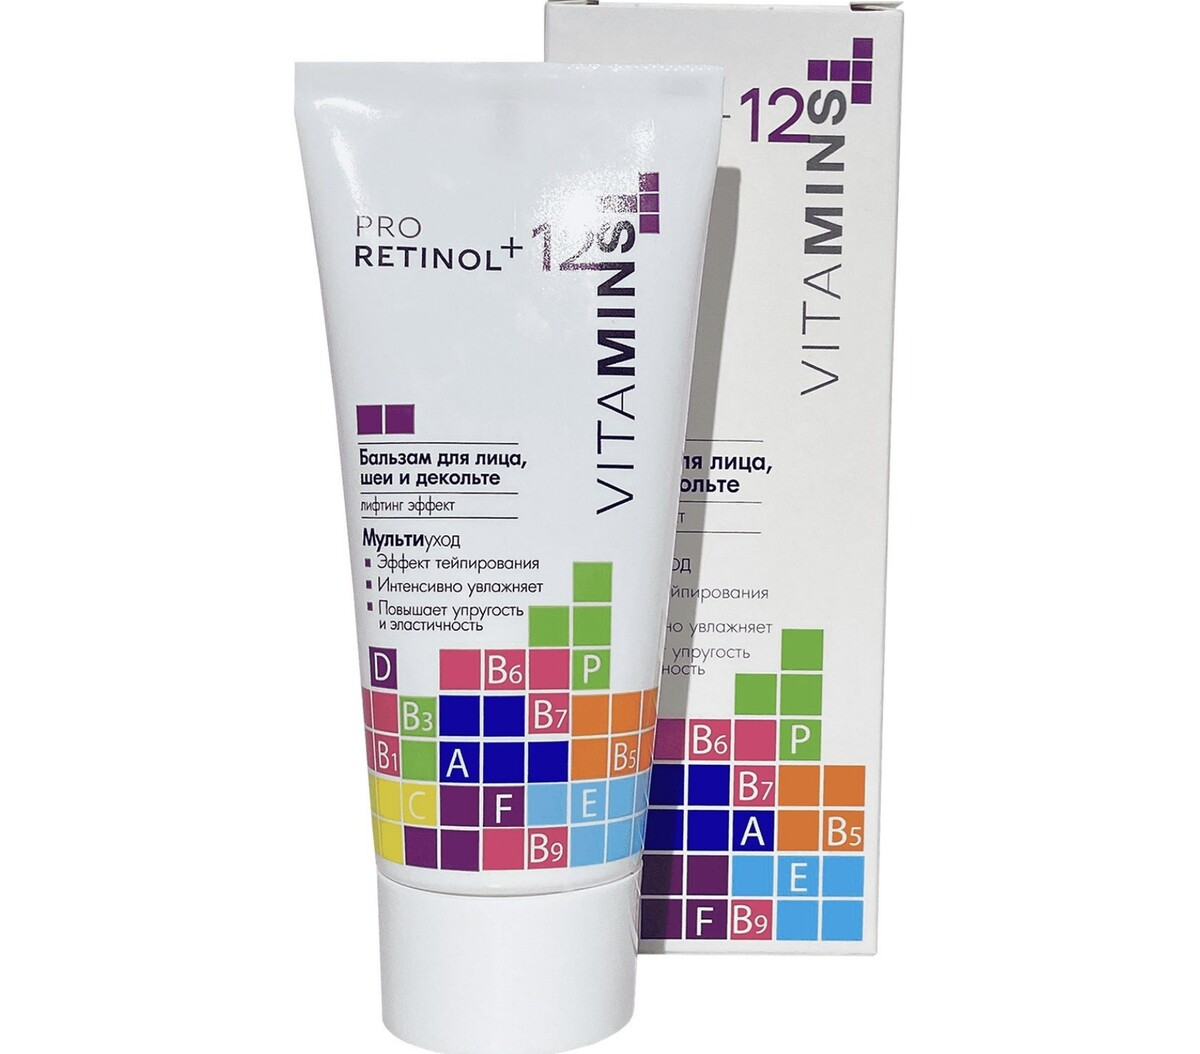 Pro retinol + 12 vitamins бальзам для лица, шеи и декольте, 50г